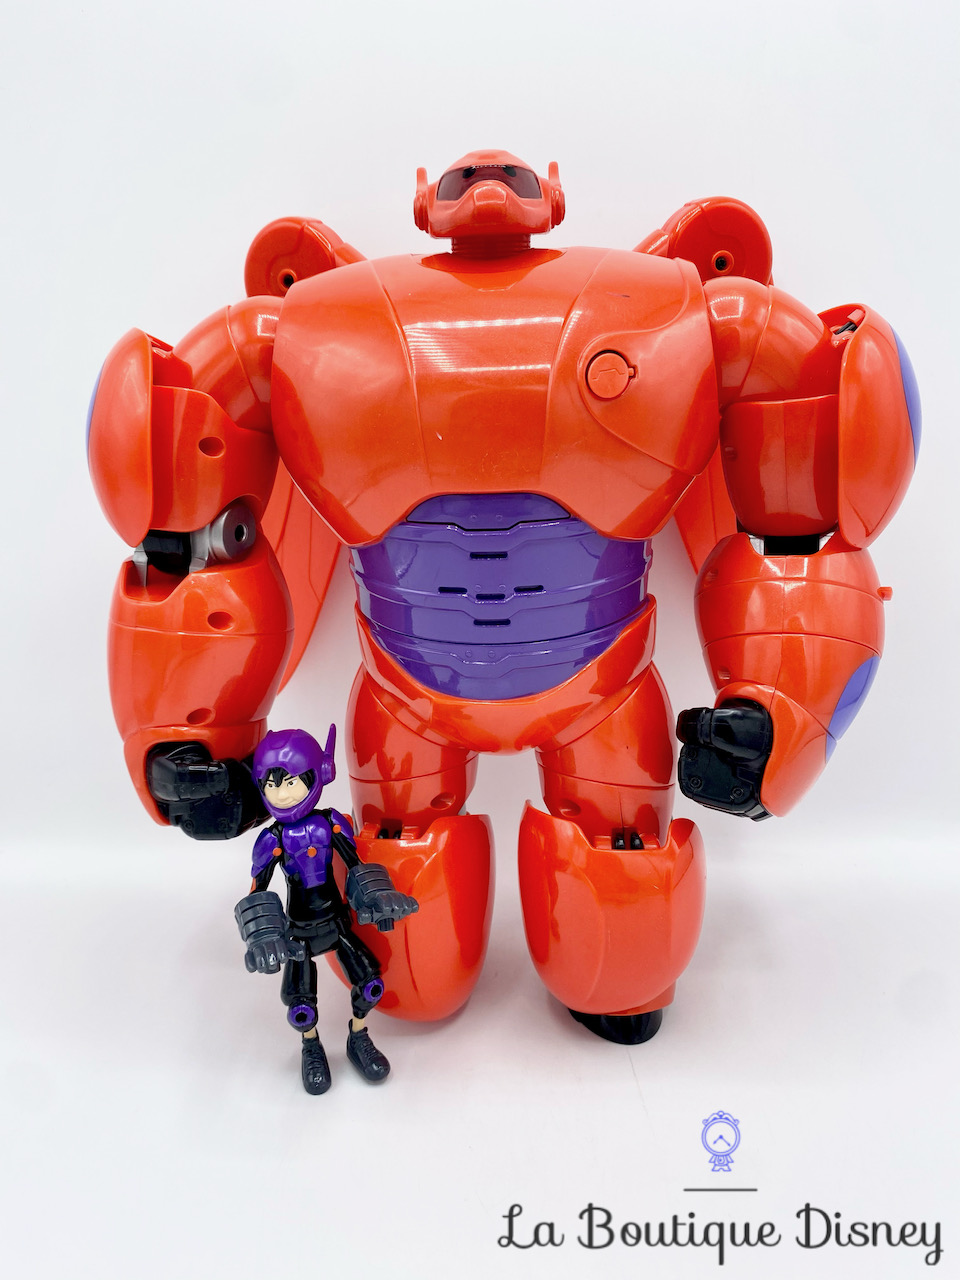 Jouet Figurine de luxe Baymax volant Les Nouveaux Héros Disney Bandai 2014 Big Hero 6 robot rouge